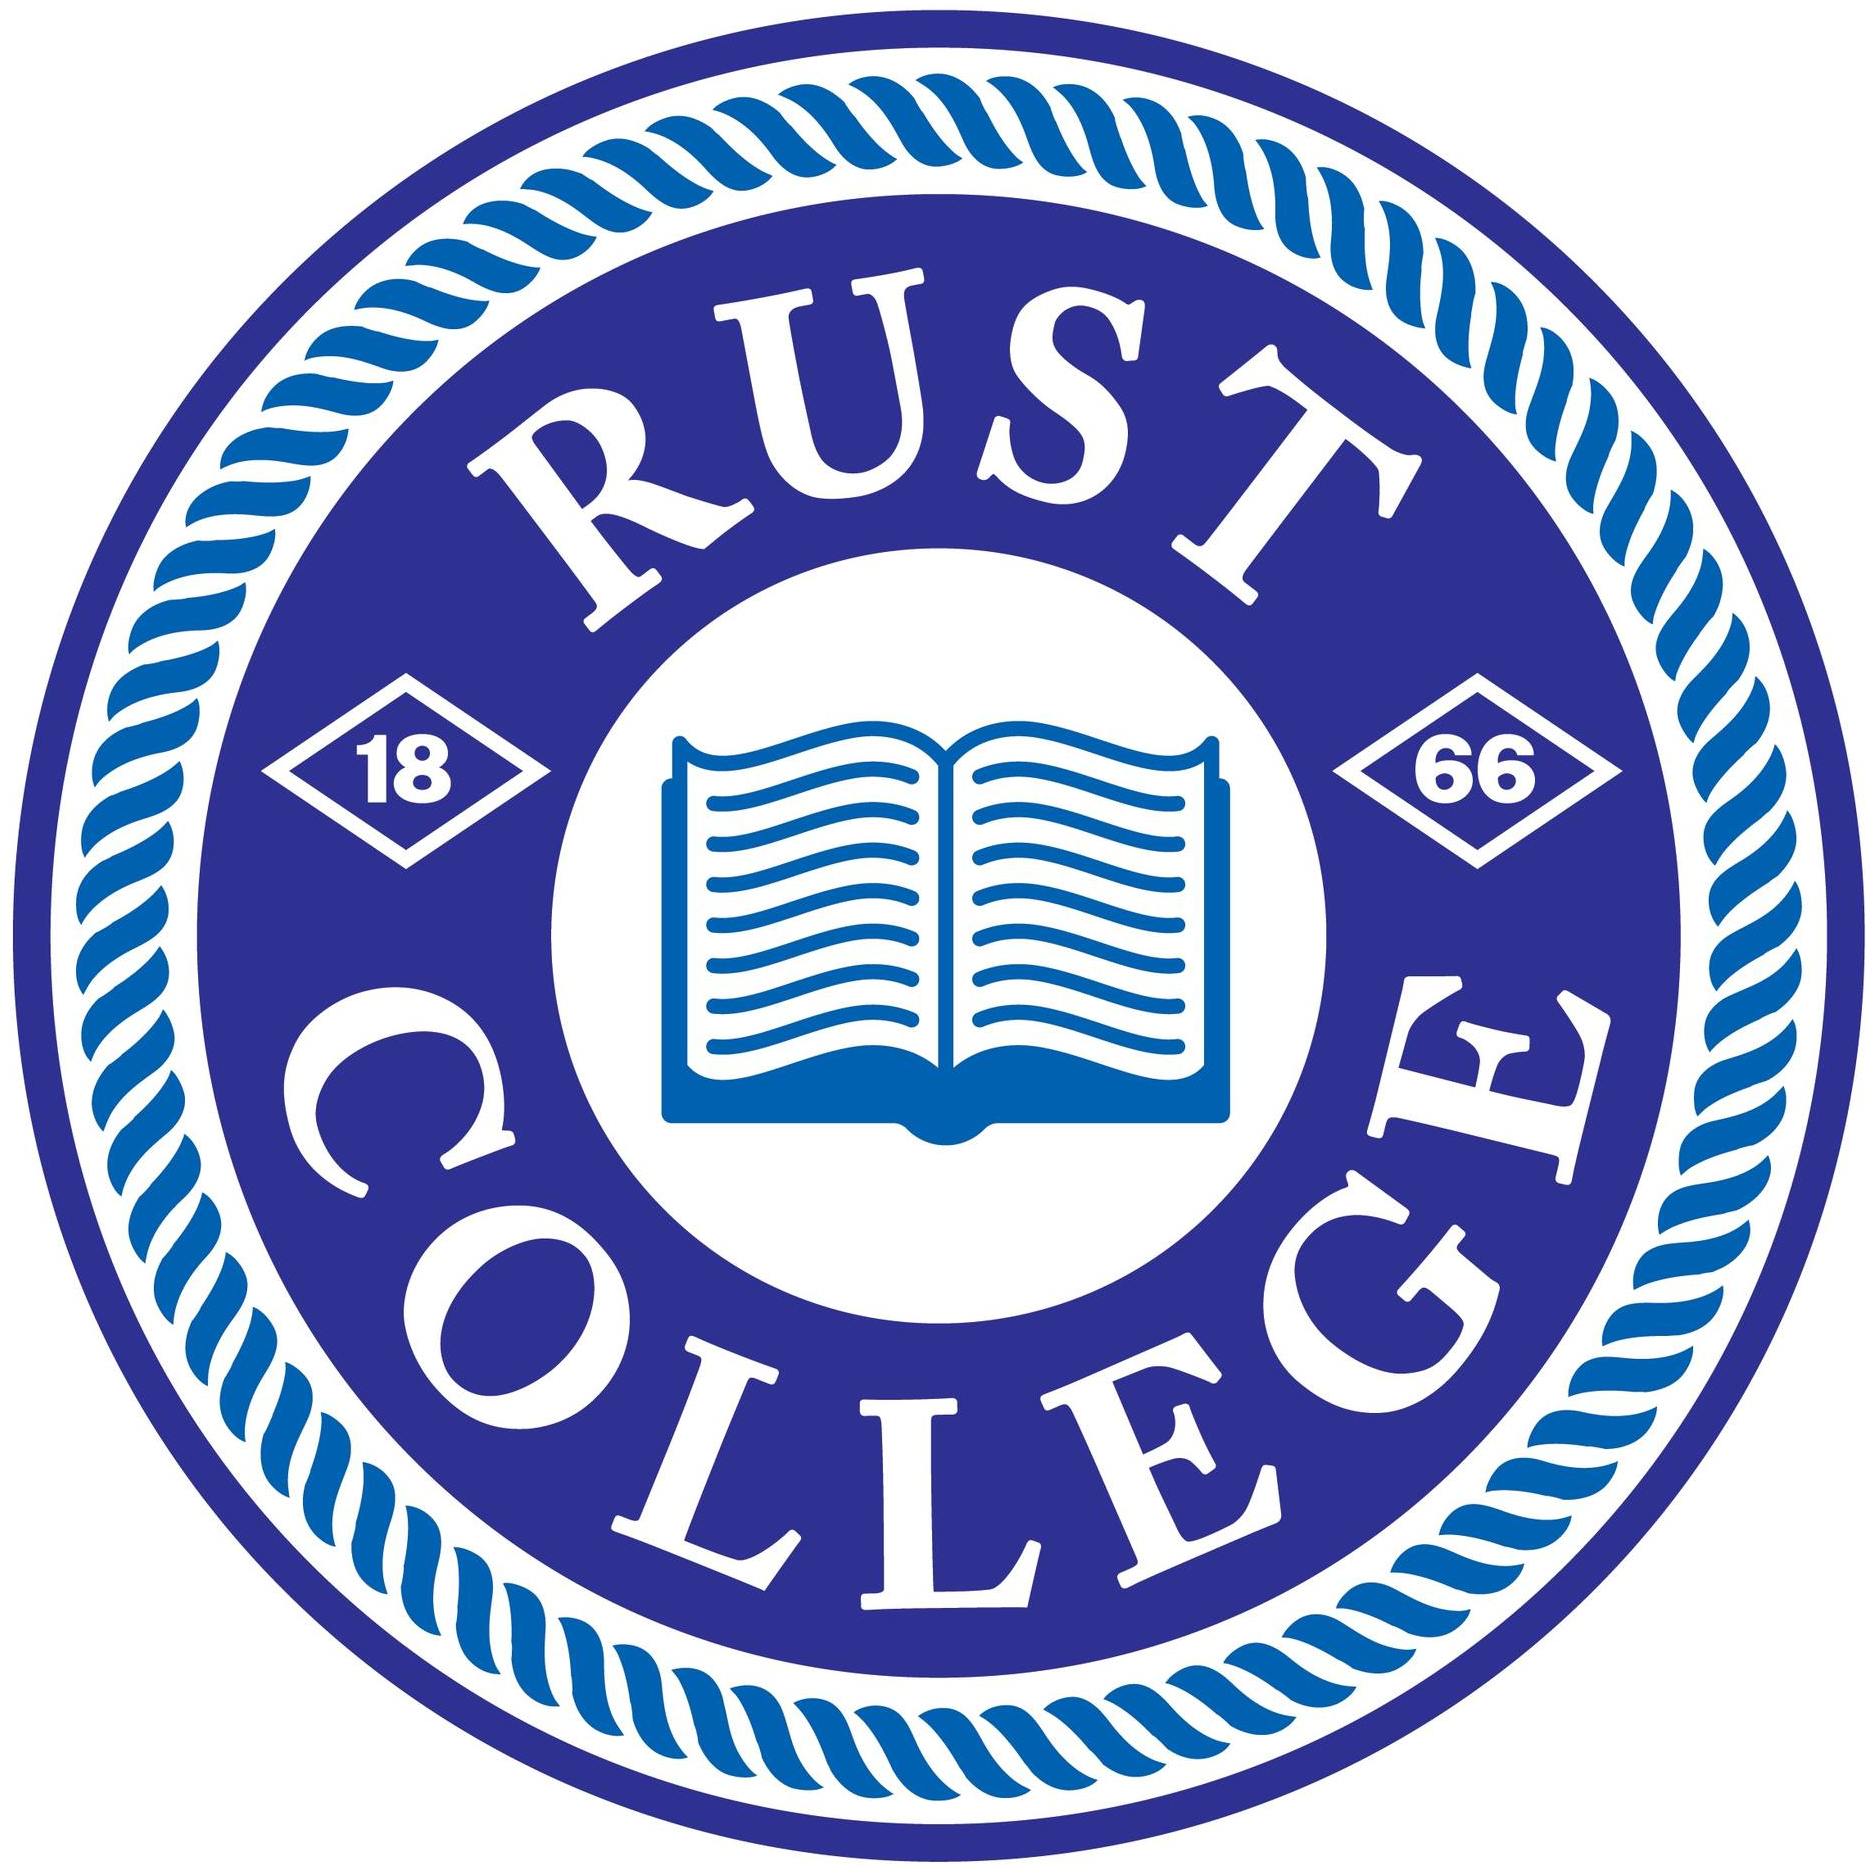 Rust College